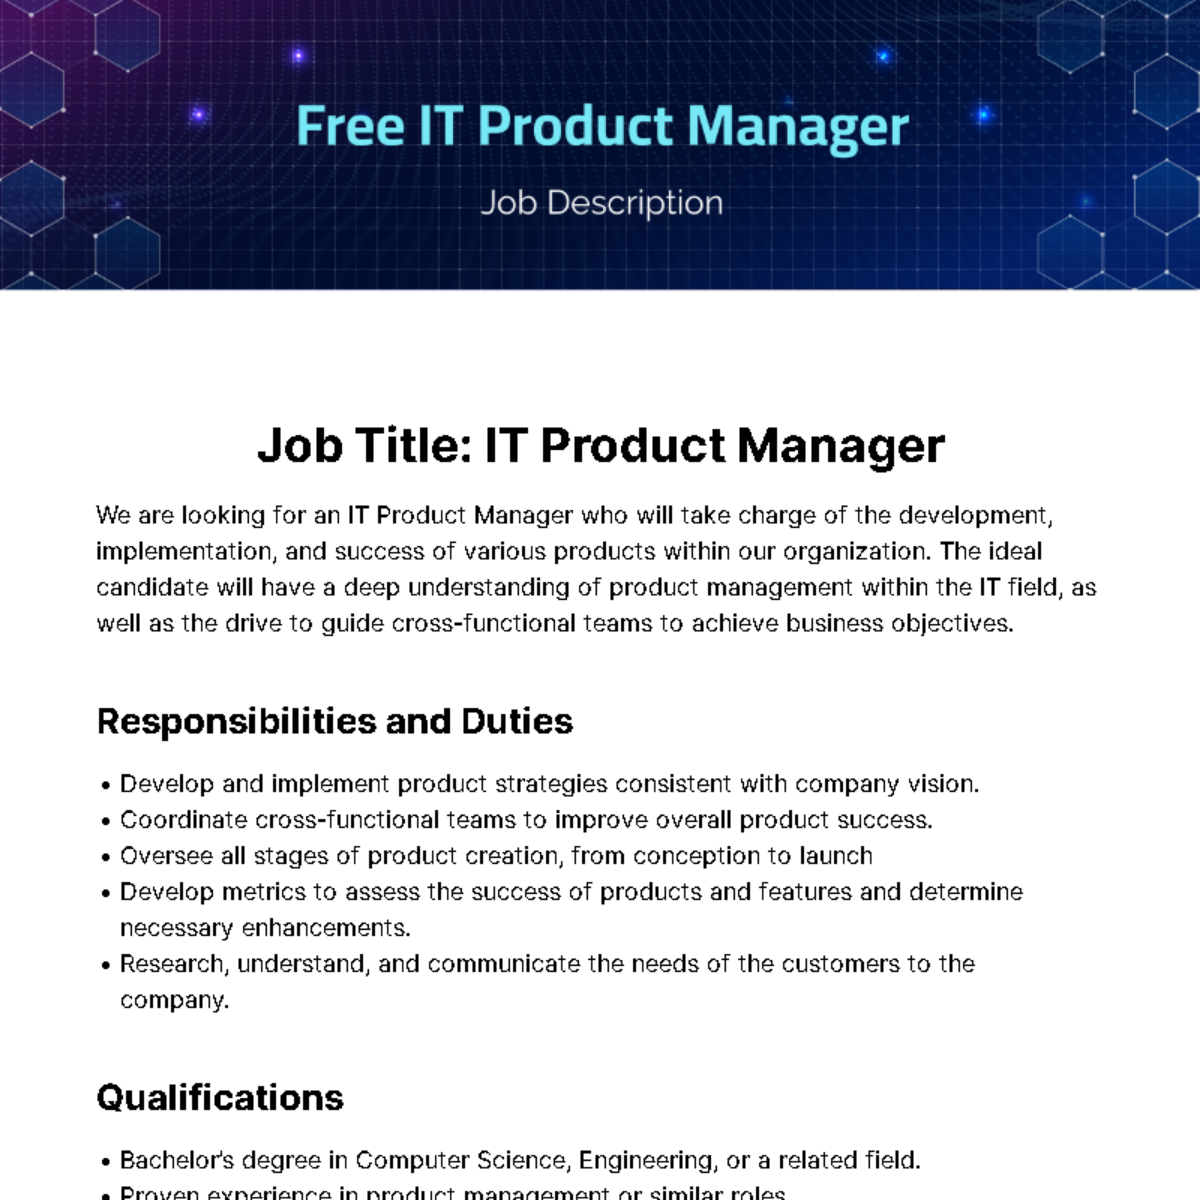 IT Product Manager Job Description Template